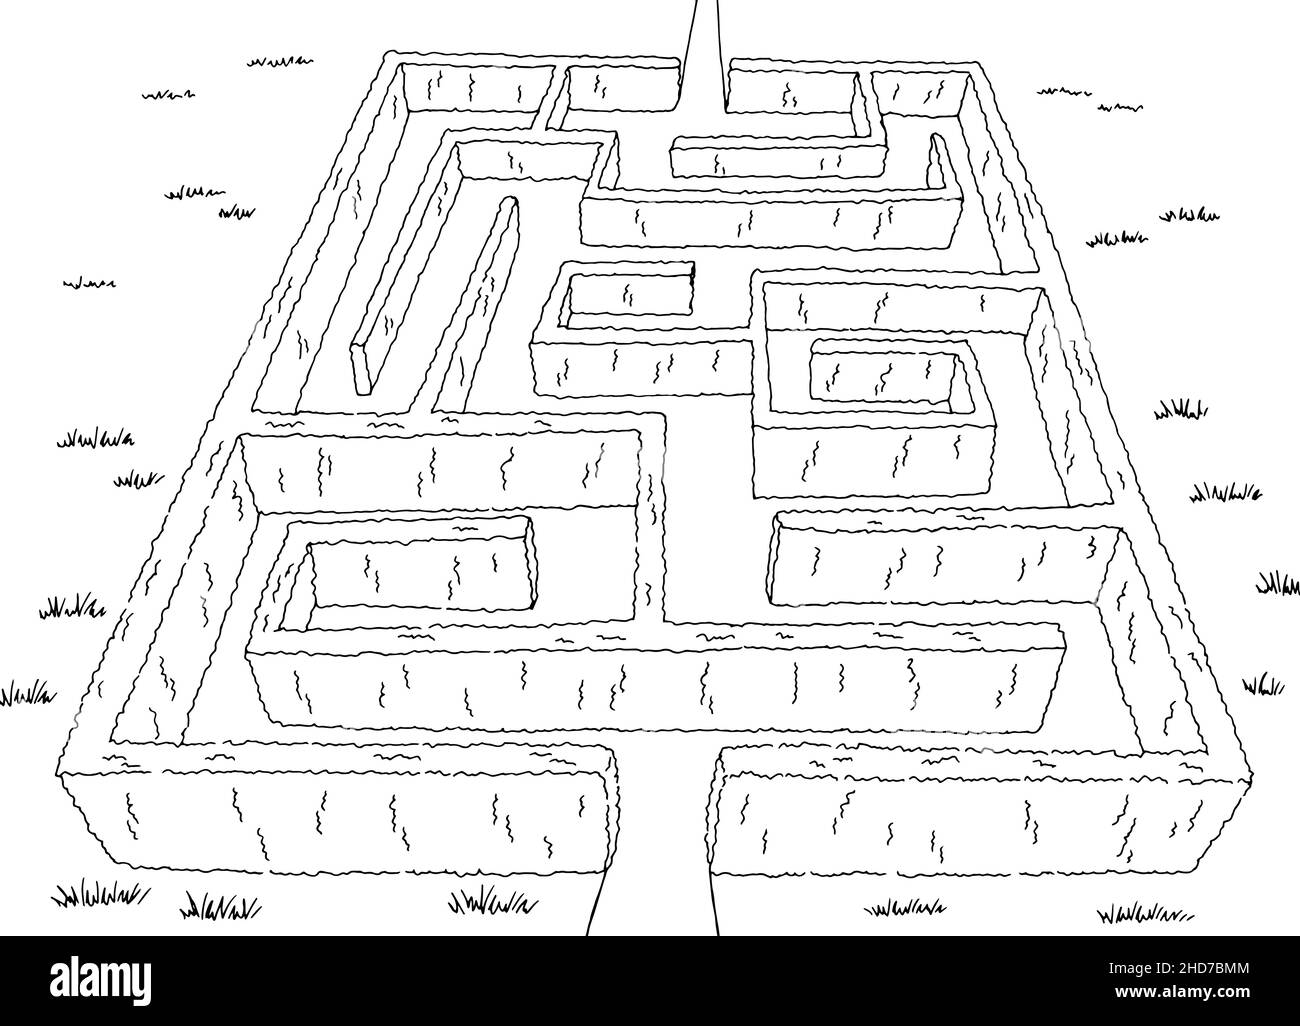 Jardin labyrinthe Bush graphique noir blanc esquisse vue aérienne supérieure vecteur d'illustration Illustration de Vecteur